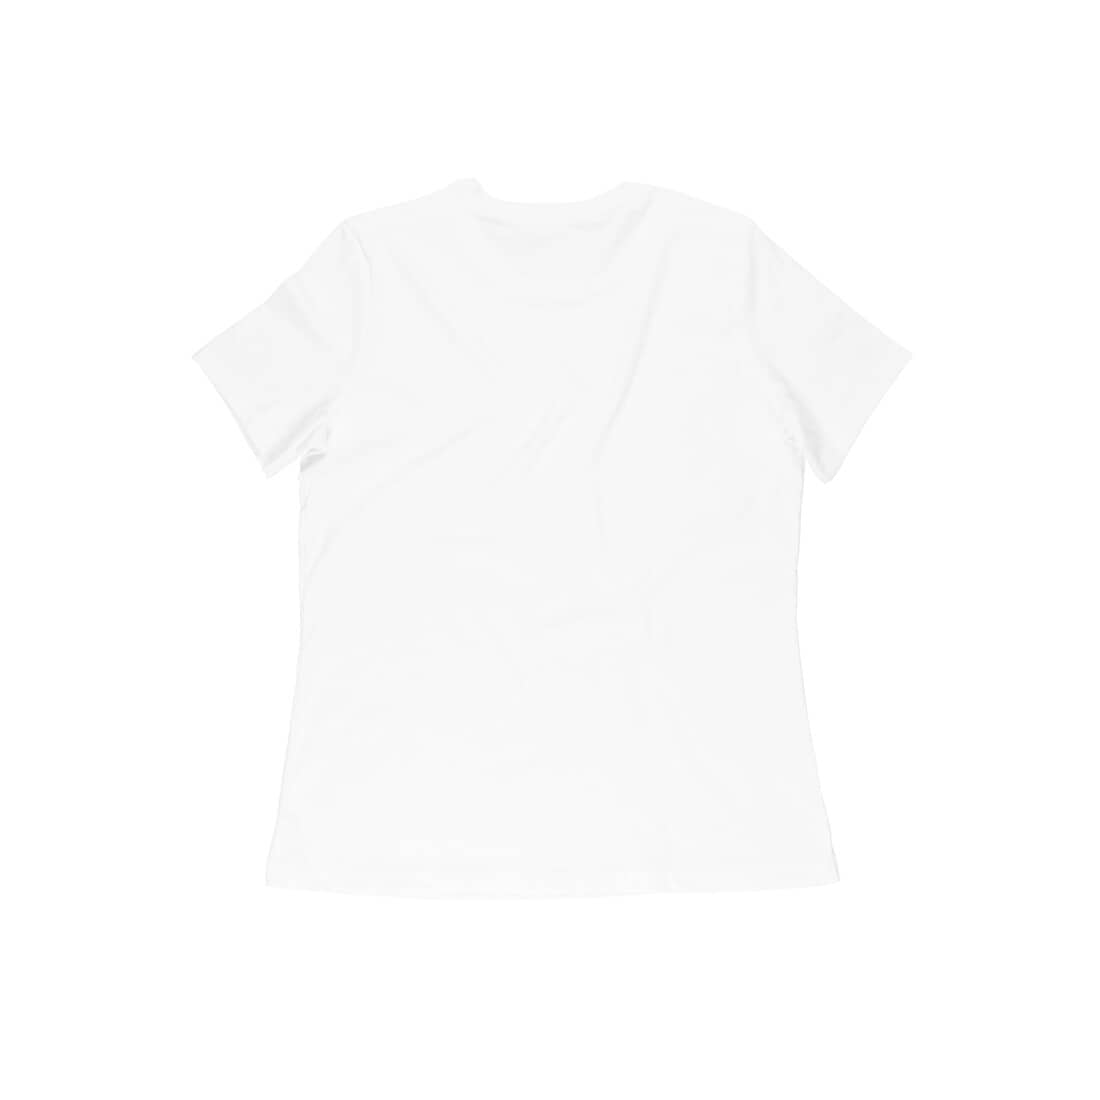 Trenfort Cardio is Hardio T-shirt for Women